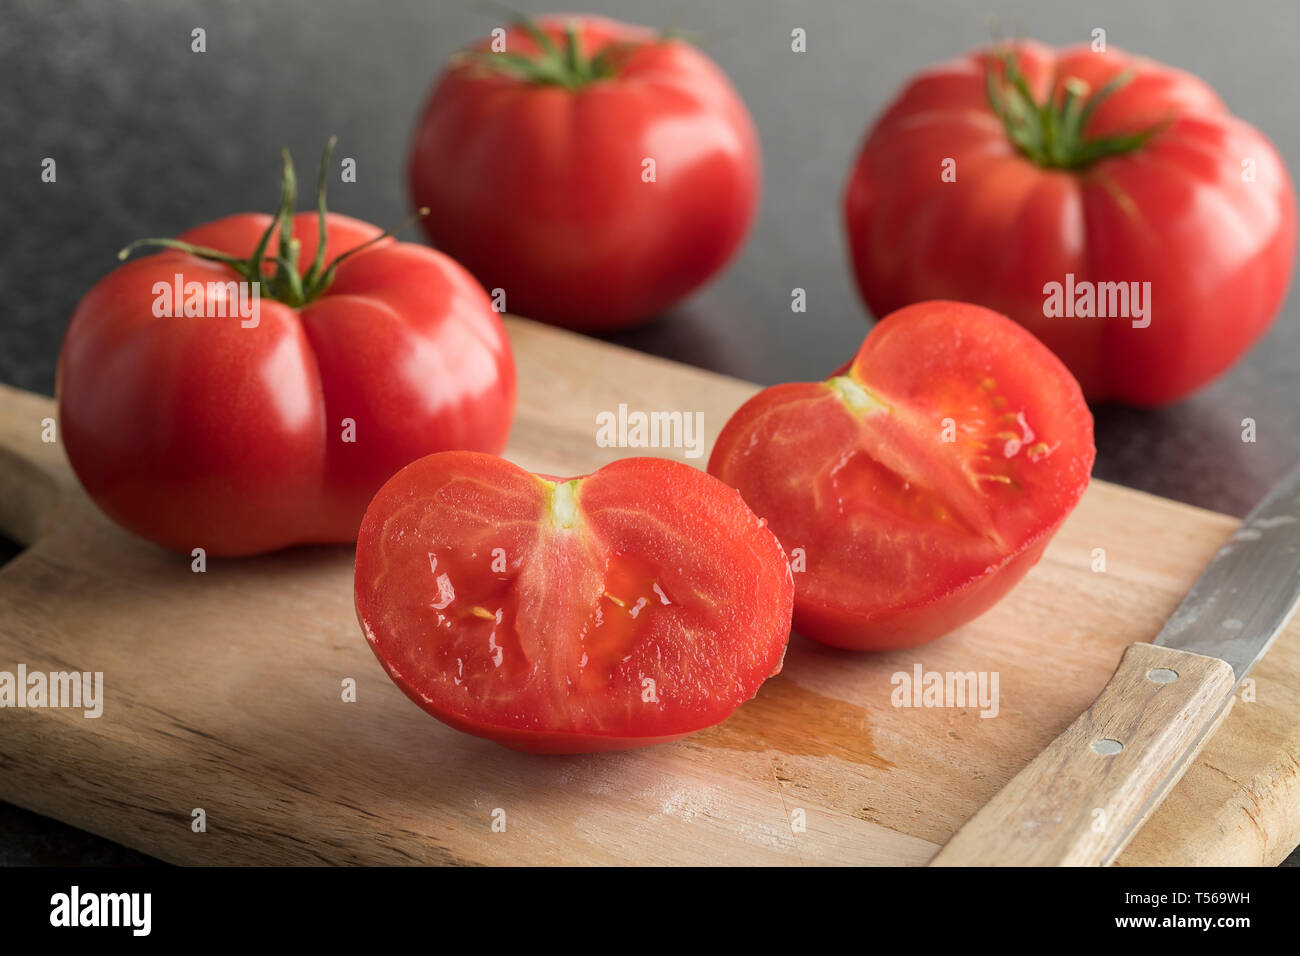 Ensemble et la moitié des tomates rouges juteux sur une planche à découper en bois close up Banque D'Images